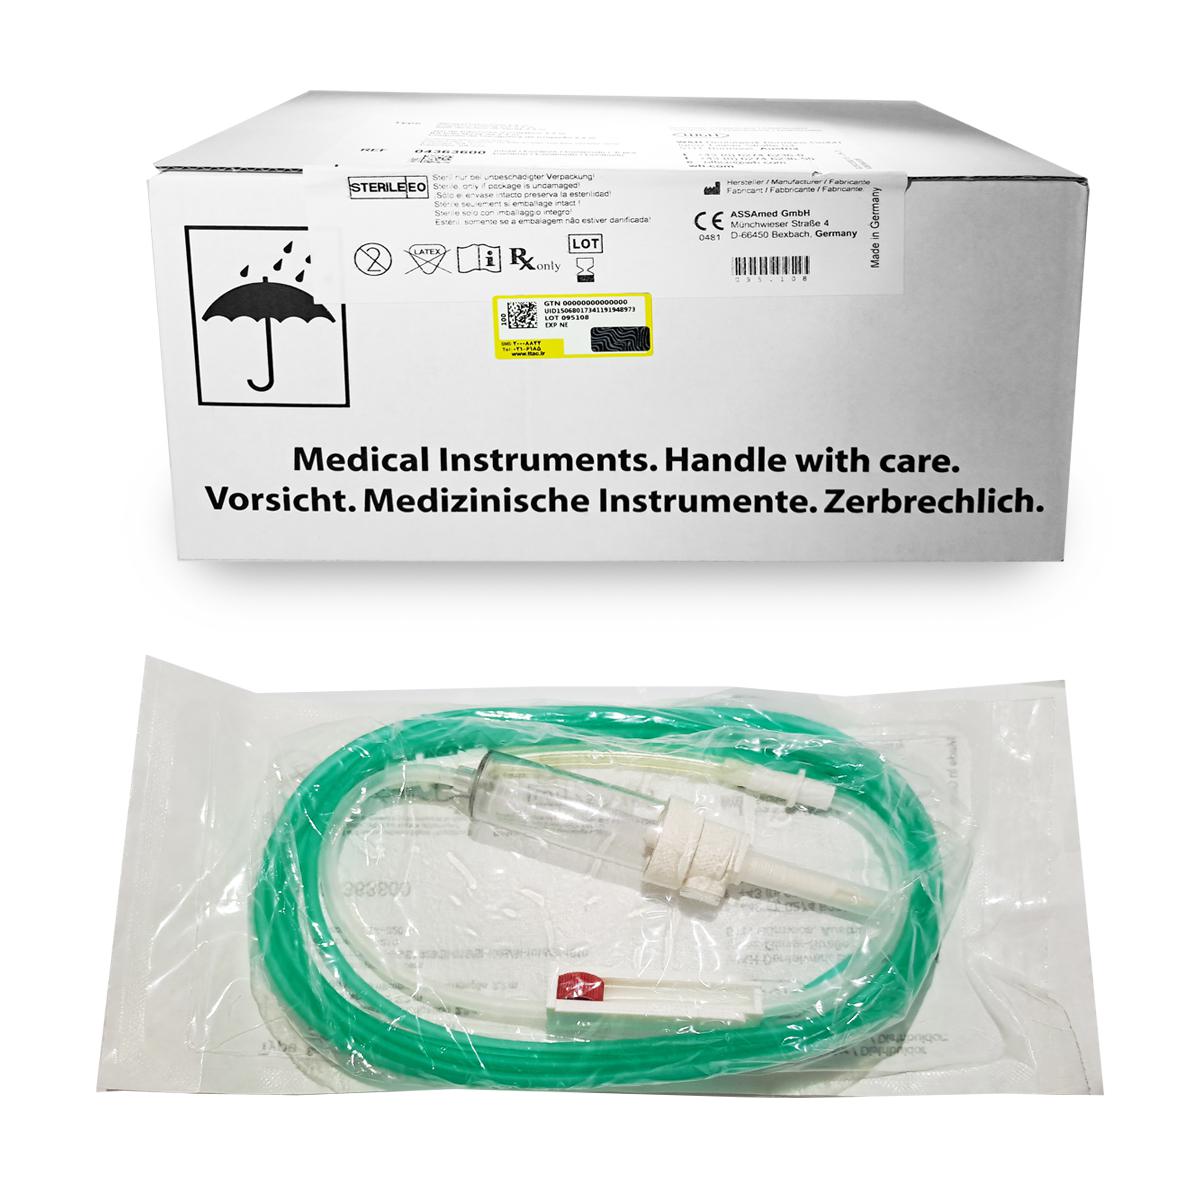 جعبه شلنگ یک سره استریل یکبار مصرف با رابط سبز  - Disposable irrigation tube for implantmed-6pcs